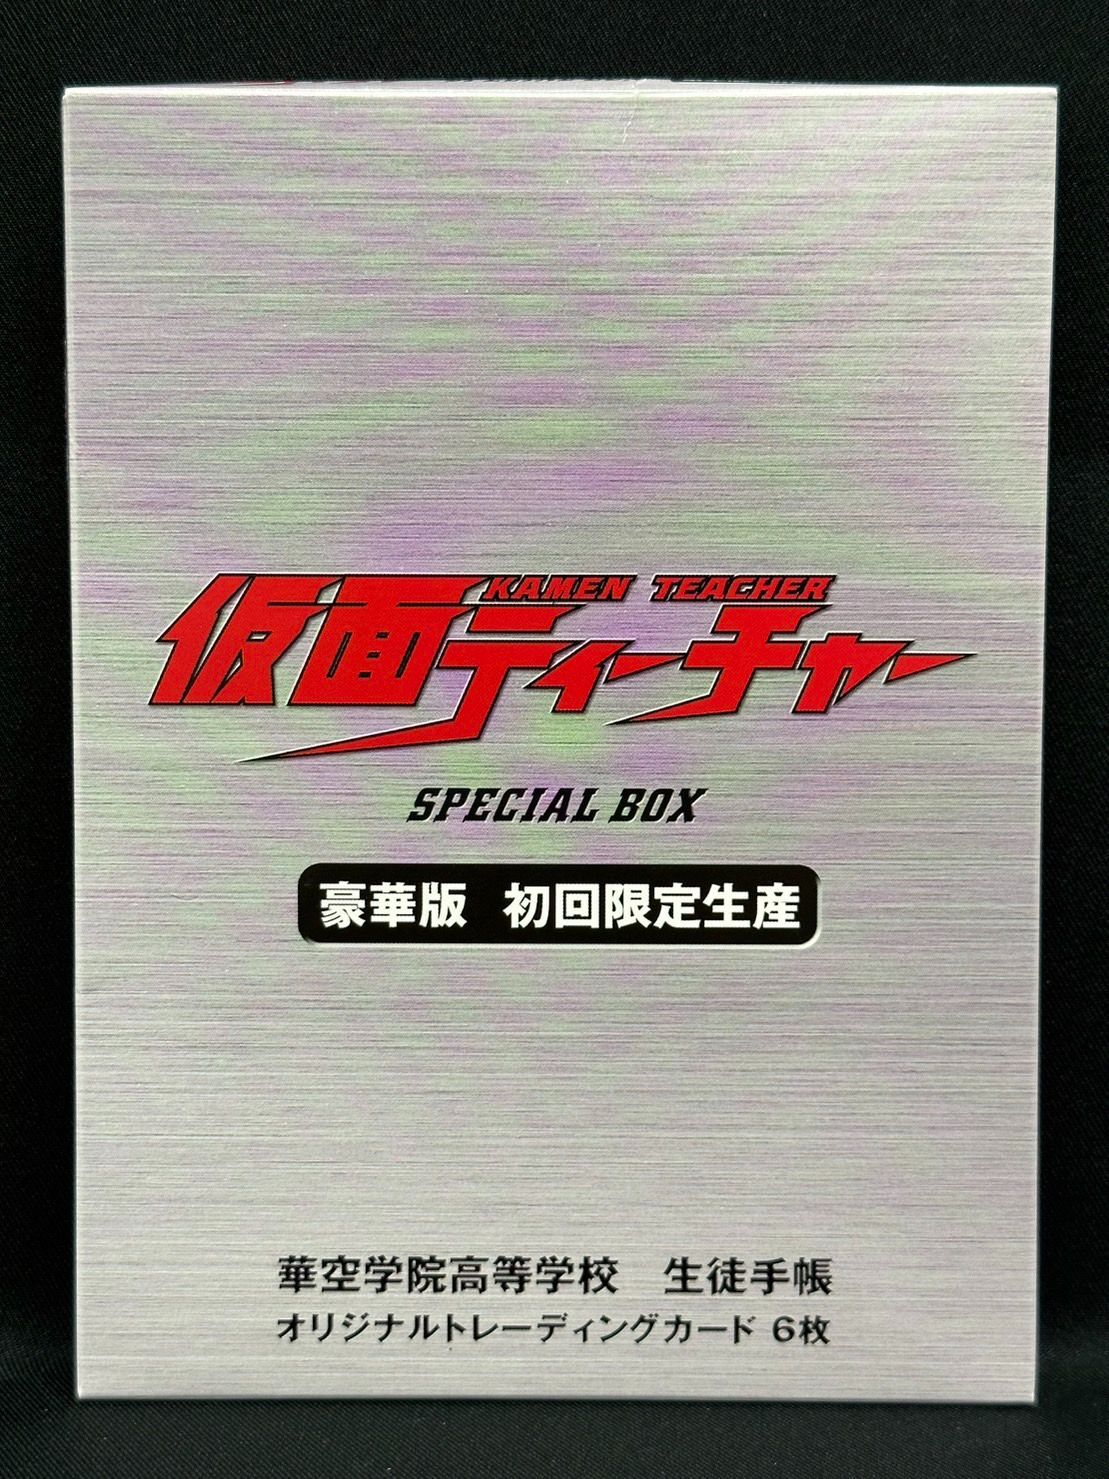 仮面ティーチャー DVD-BOX 豪華版 初回限定生産 特典あり - G-SHOP